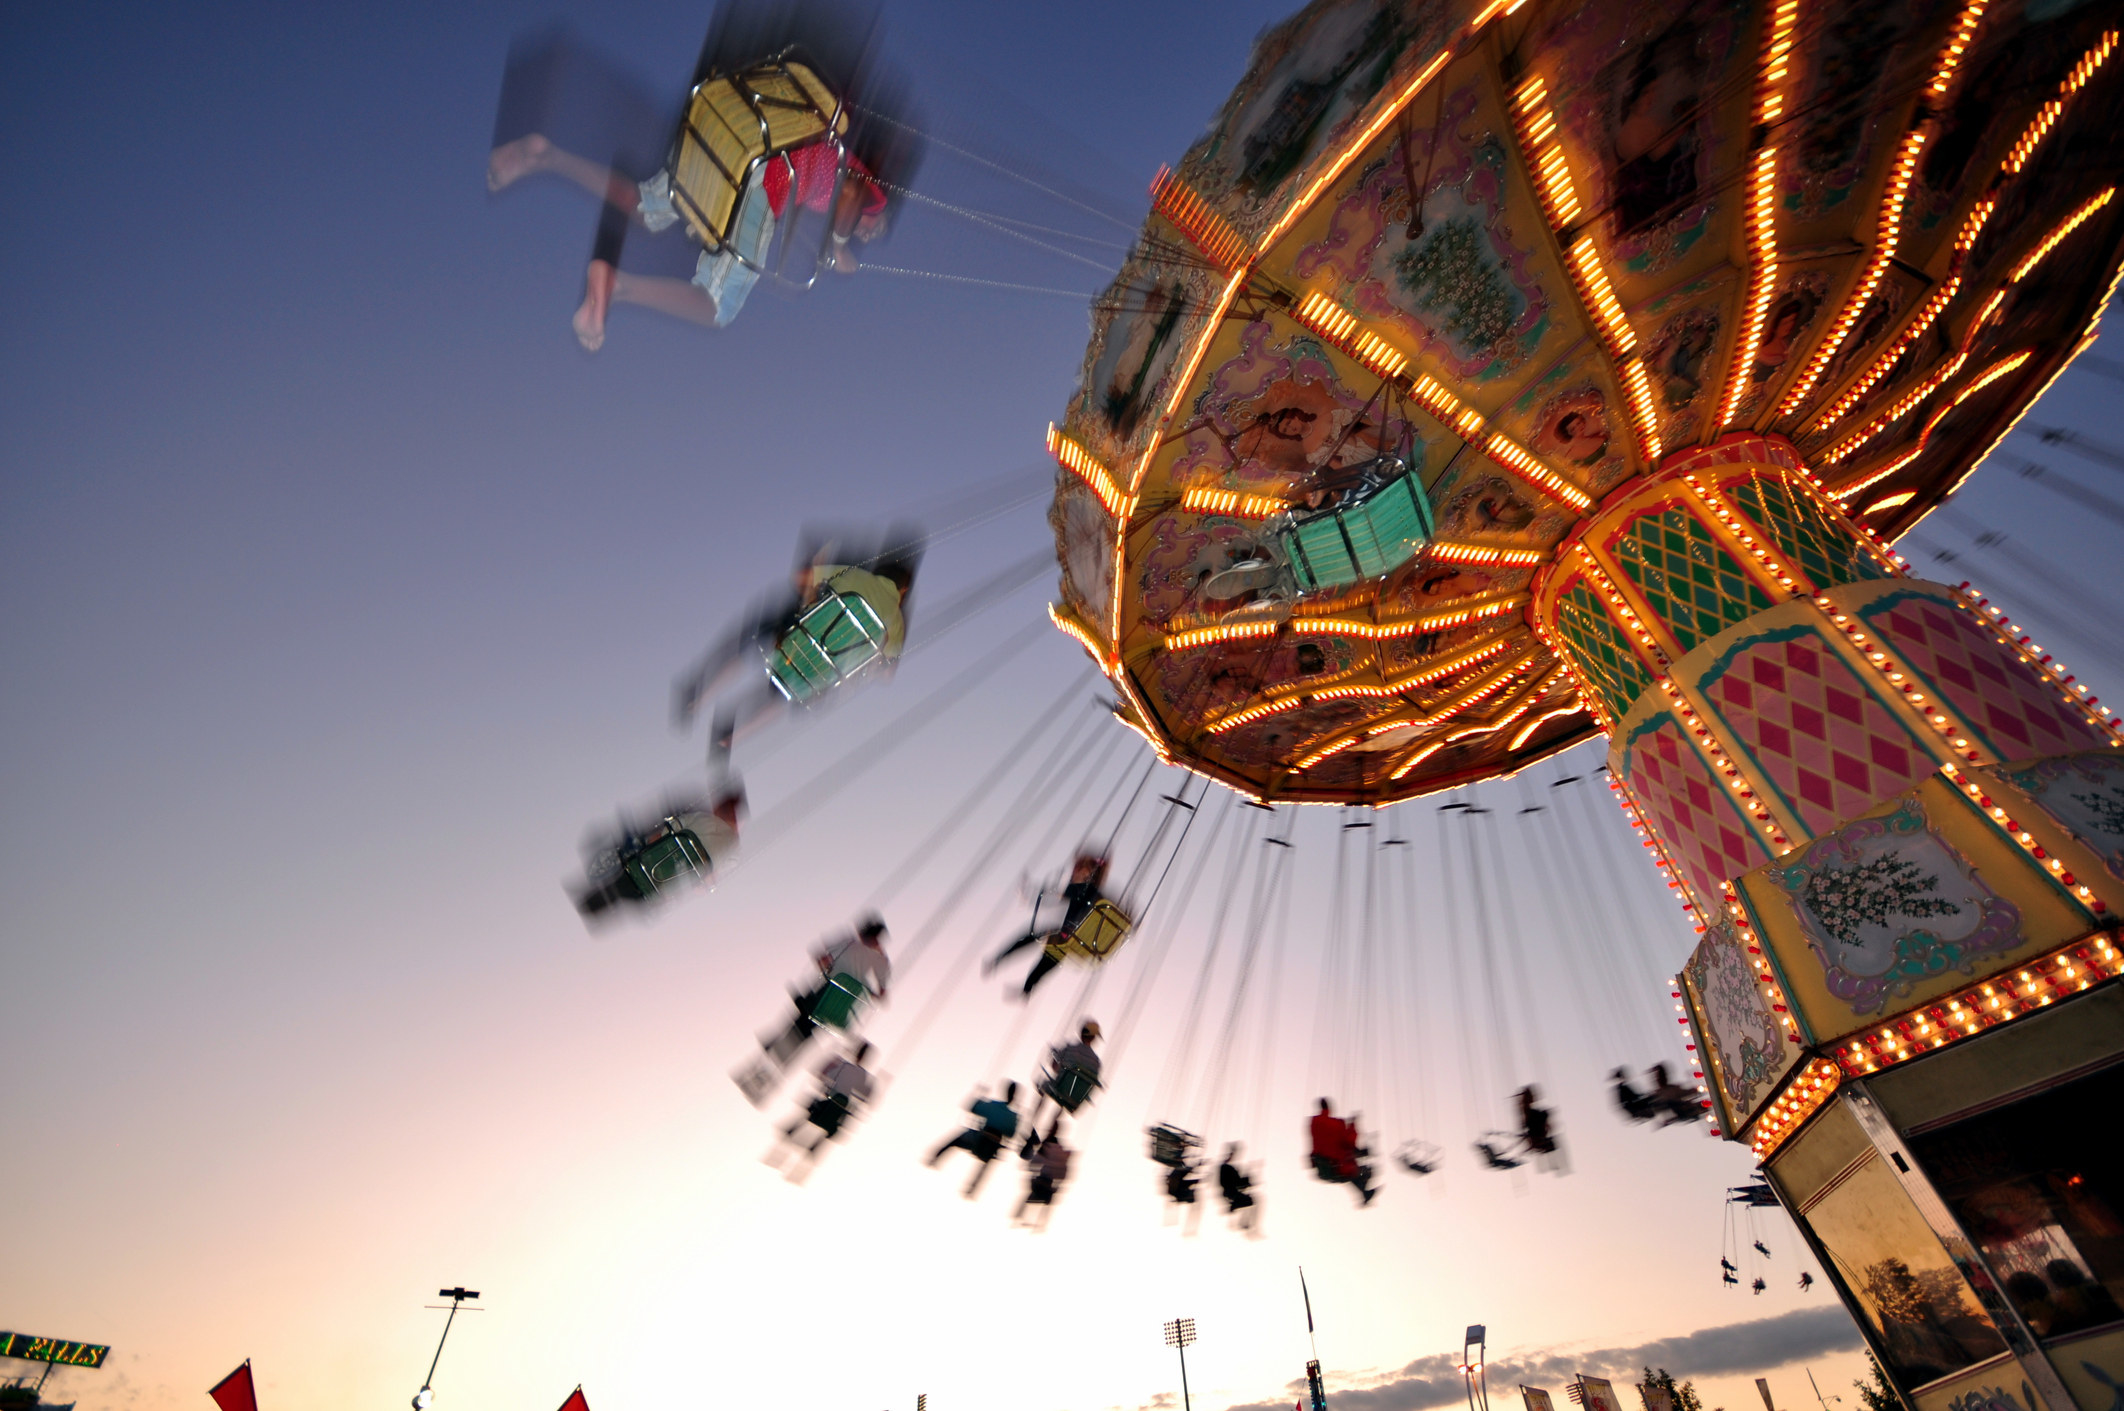 an amusement park swing ride